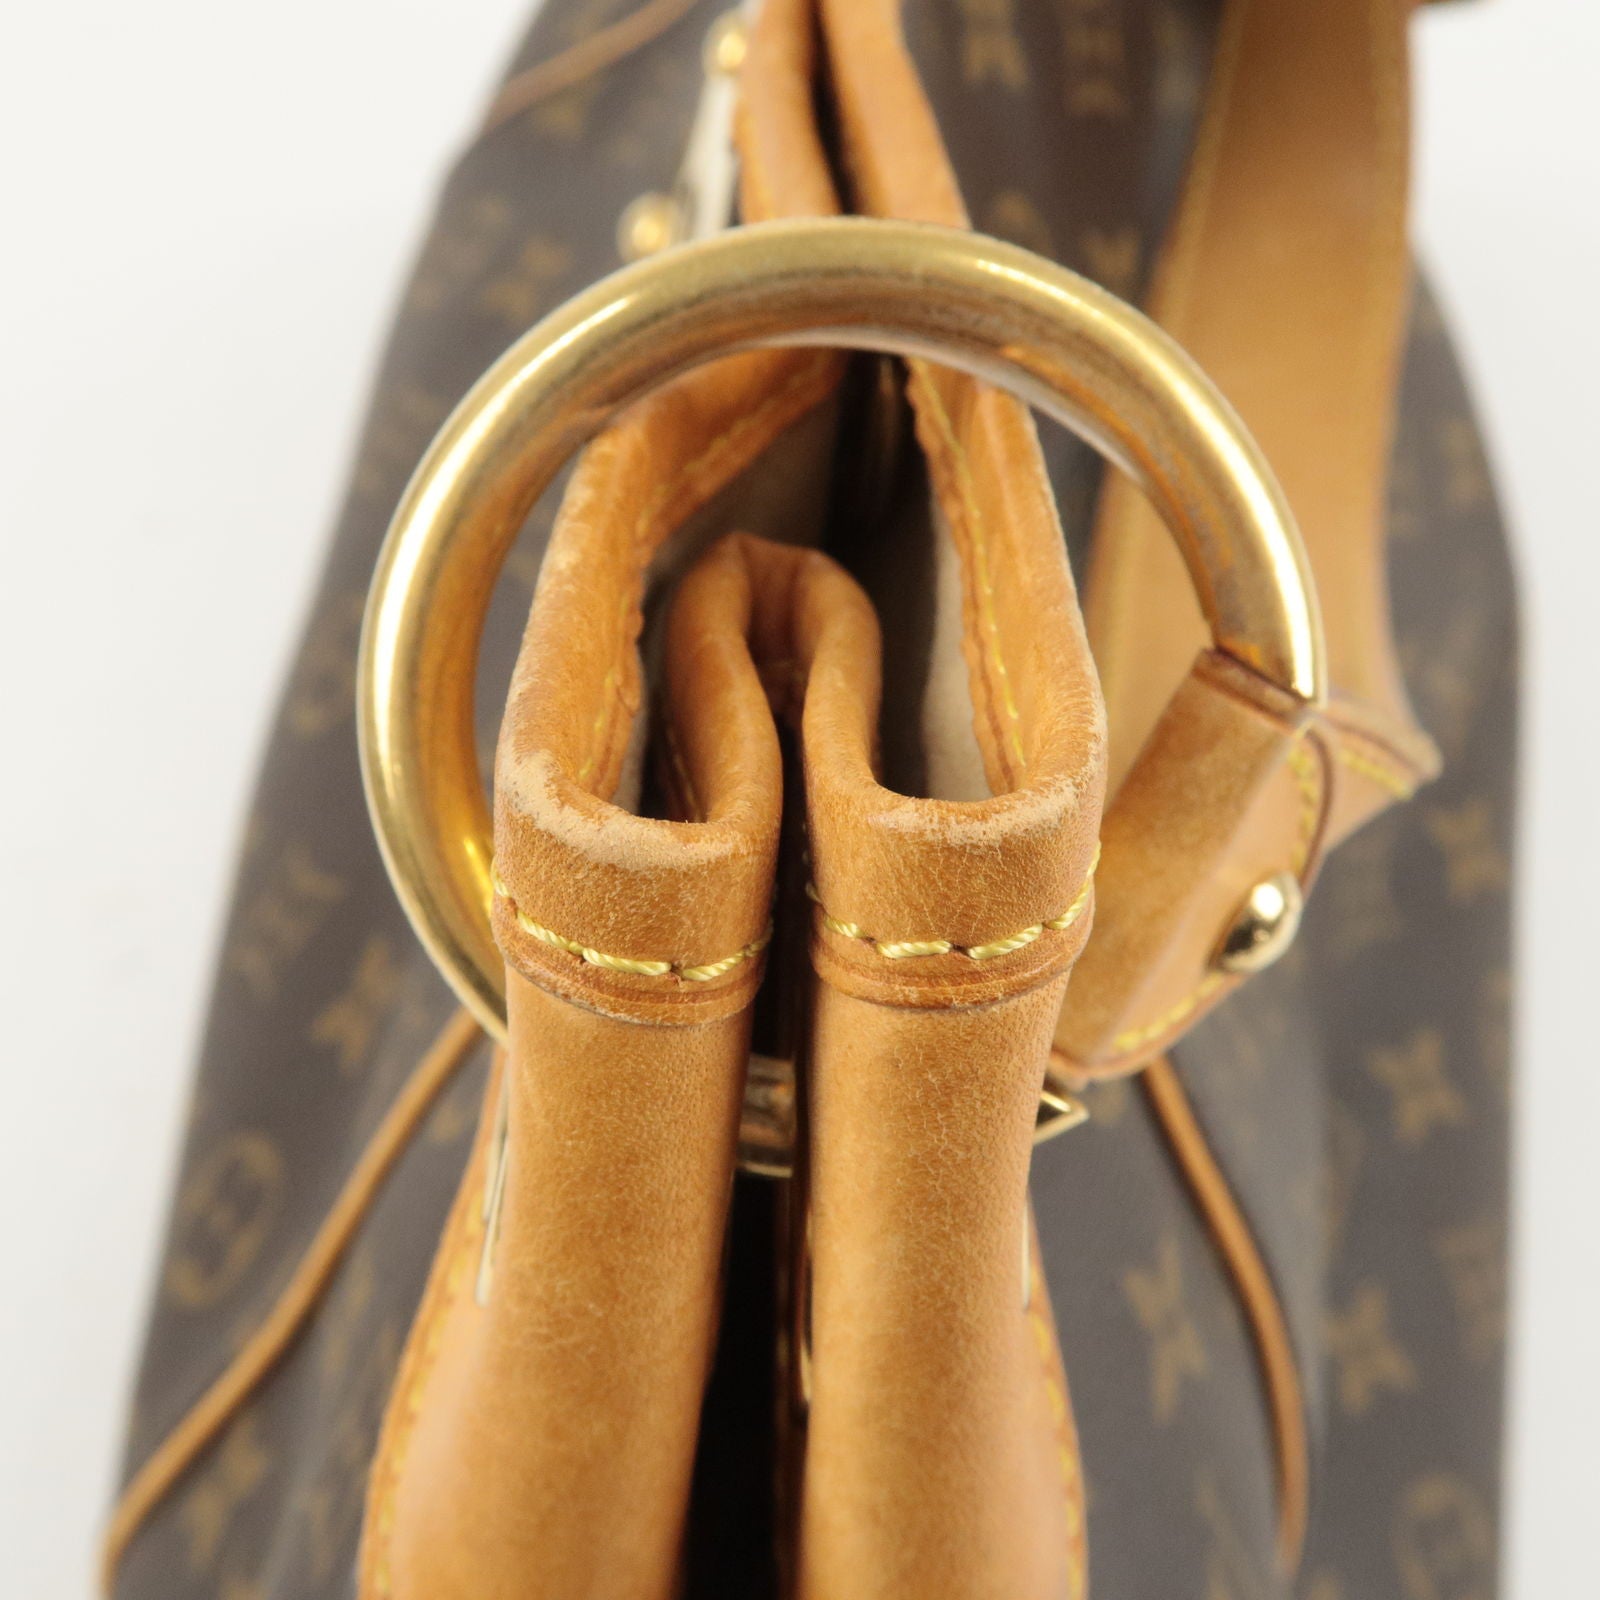 Louis Vuitton, Bags, Authentic Louis Vuitton Galliera Pm